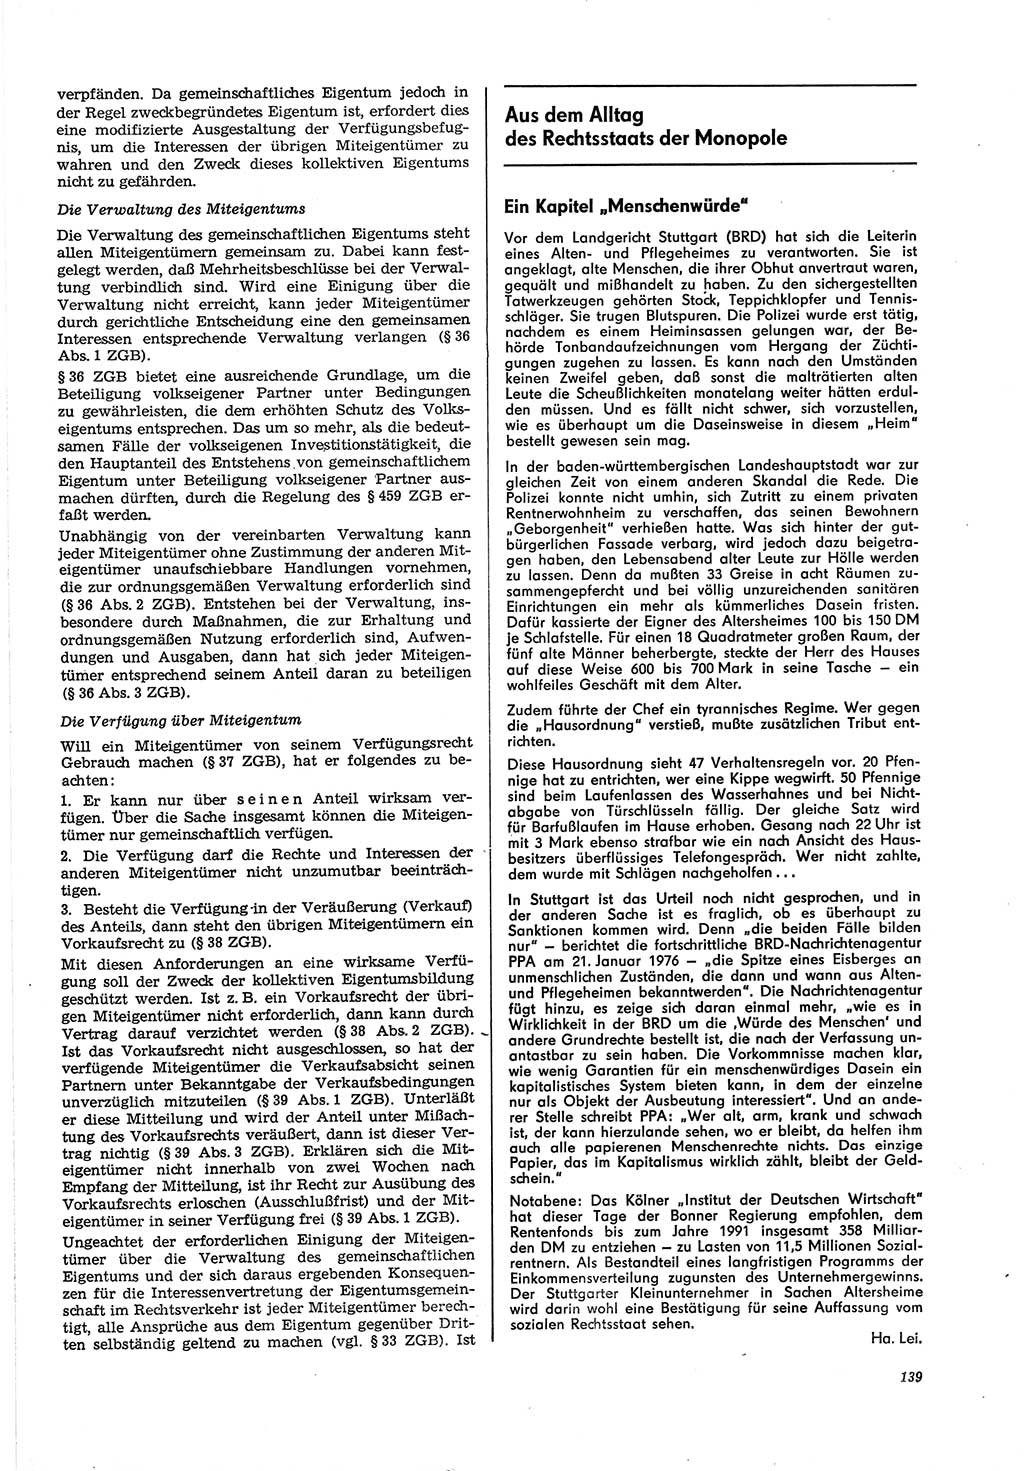 Neue Justiz (NJ), Zeitschrift für Recht und Rechtswissenschaft [Deutsche Demokratische Republik (DDR)], 30. Jahrgang 1976, Seite 139 (NJ DDR 1976, S. 139)